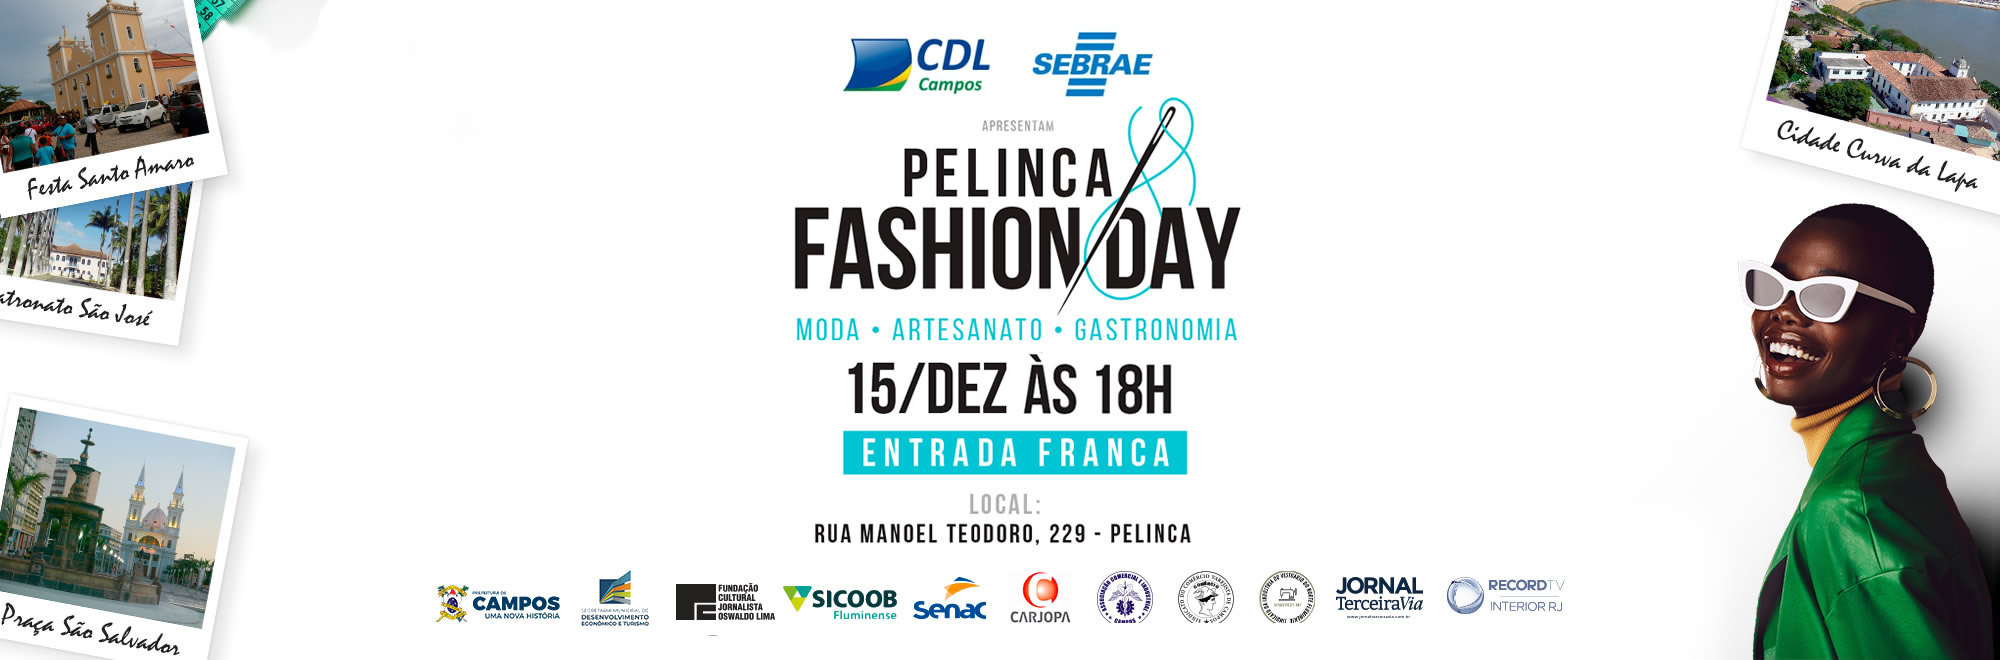 Pelinca Fashion Day - CDL Campos e Sebrae